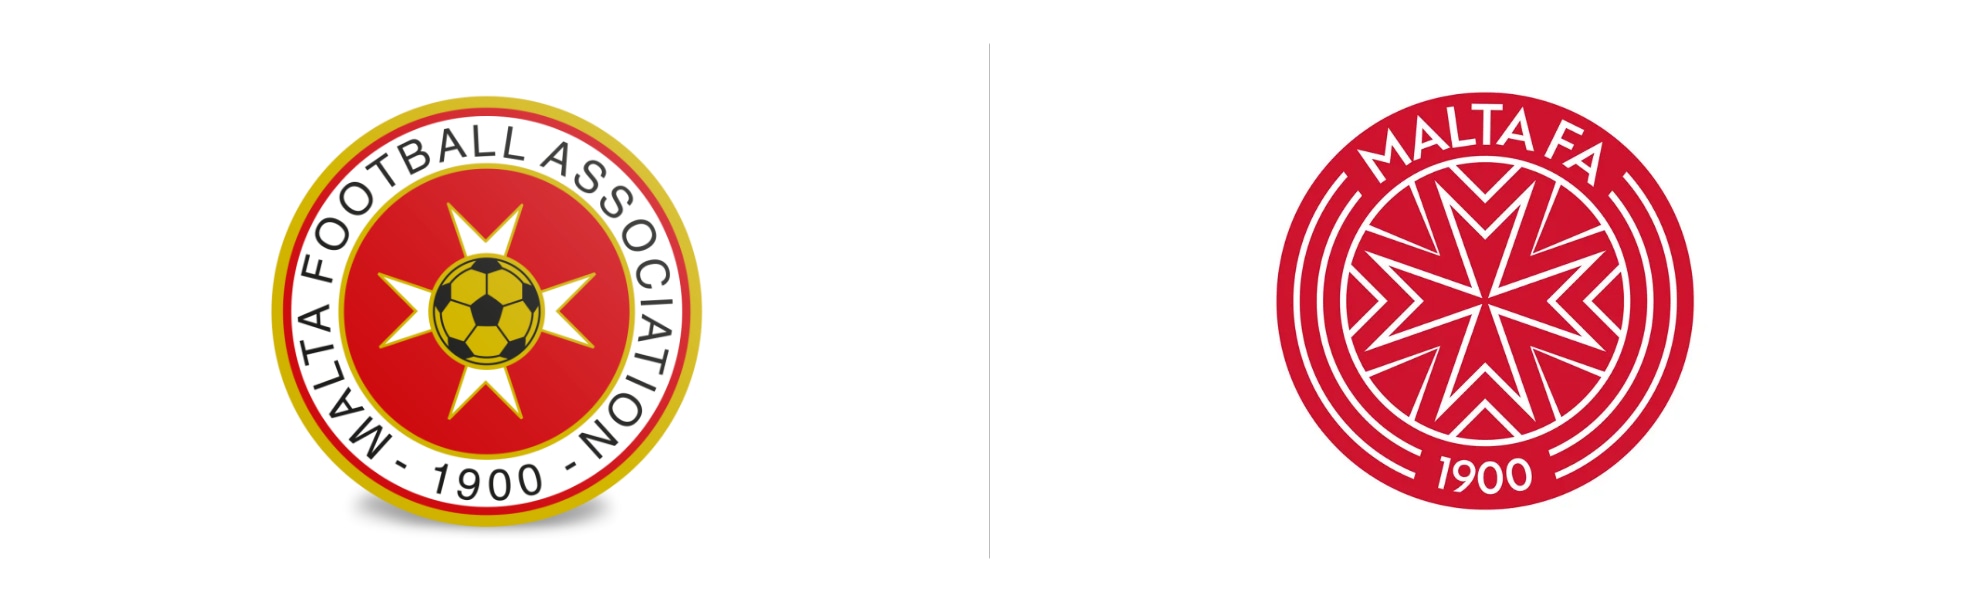 Maltański związku piłkarski – logo